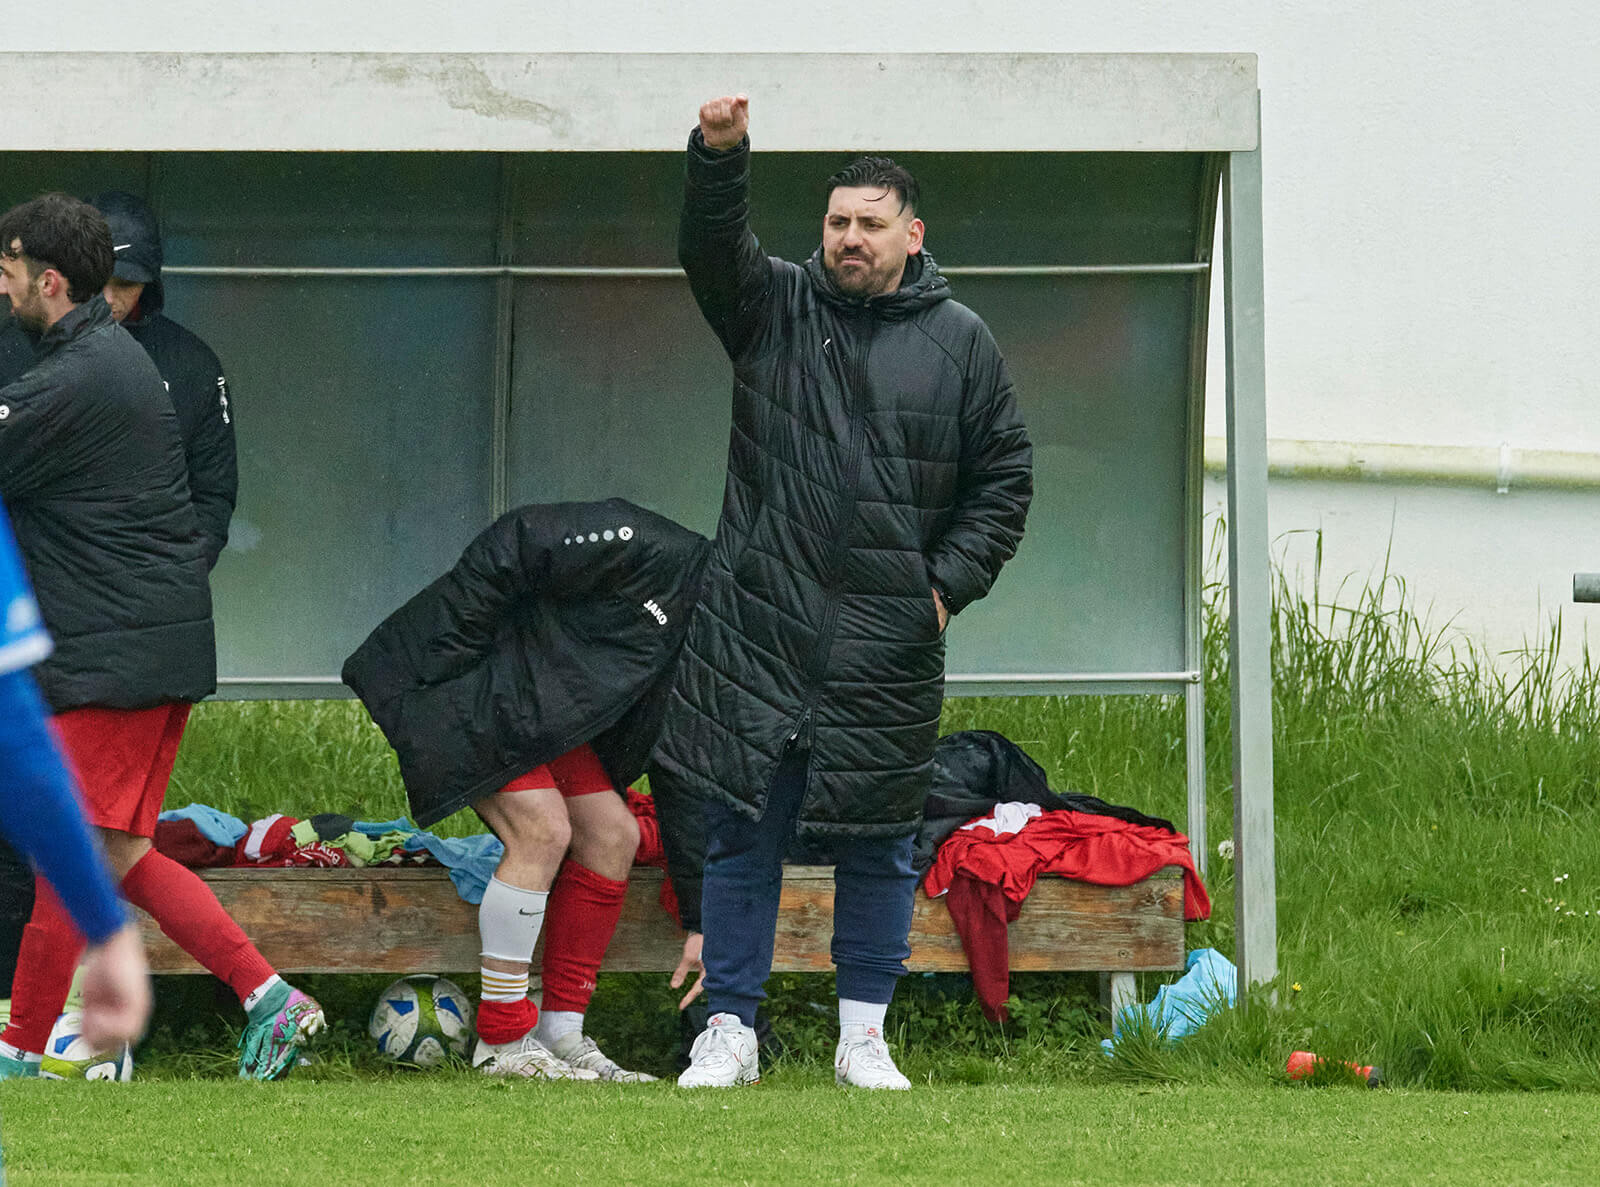  TSV Neckarau-Coach Giovanni Marino und sein Team stehen bei der SKV Sandhofen vor einem 6-Punkte-Spiel. Bild: Berno Nix